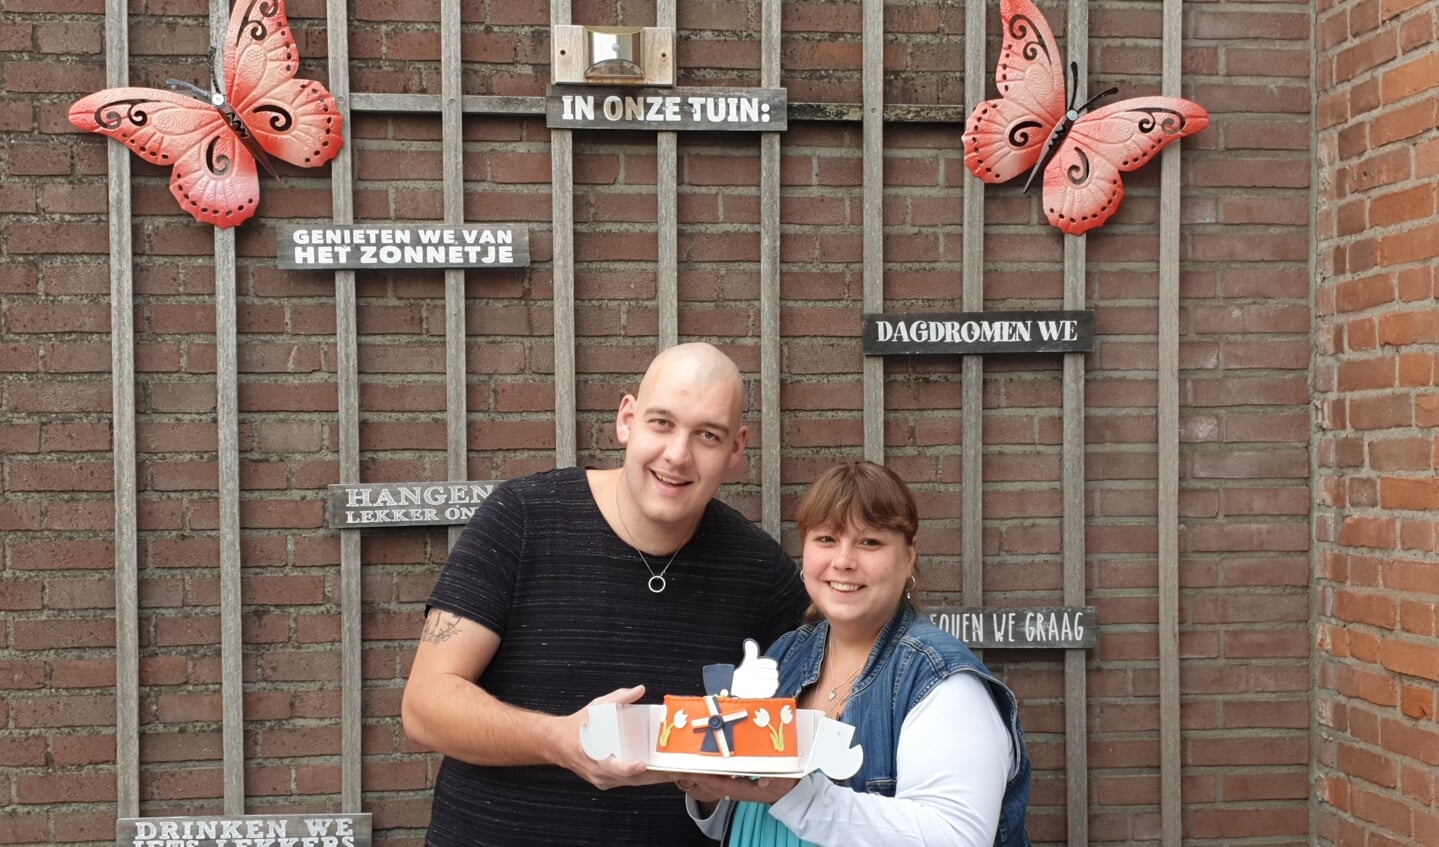 • Eveline de Kuiper en Robert van de Graaf uit Nieuwpoort wonnen deze maand de taart van de actie Mooi Molenlanden van VVD Molenlanden.